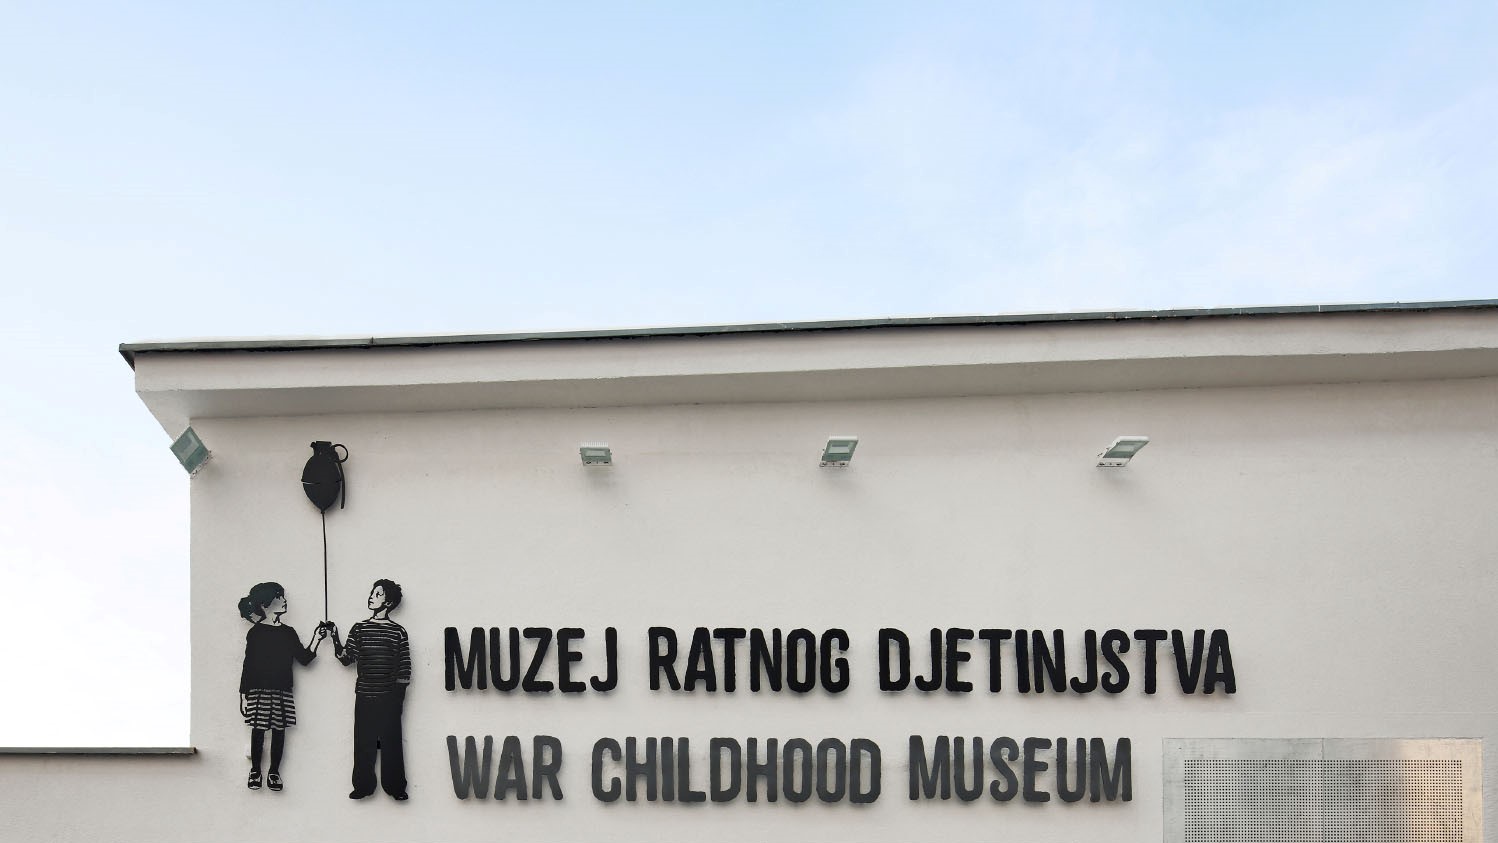 Slučaj iz 2020: Sud potvrdio da su iznošene laži o Muzeju ratnog djetinjstva